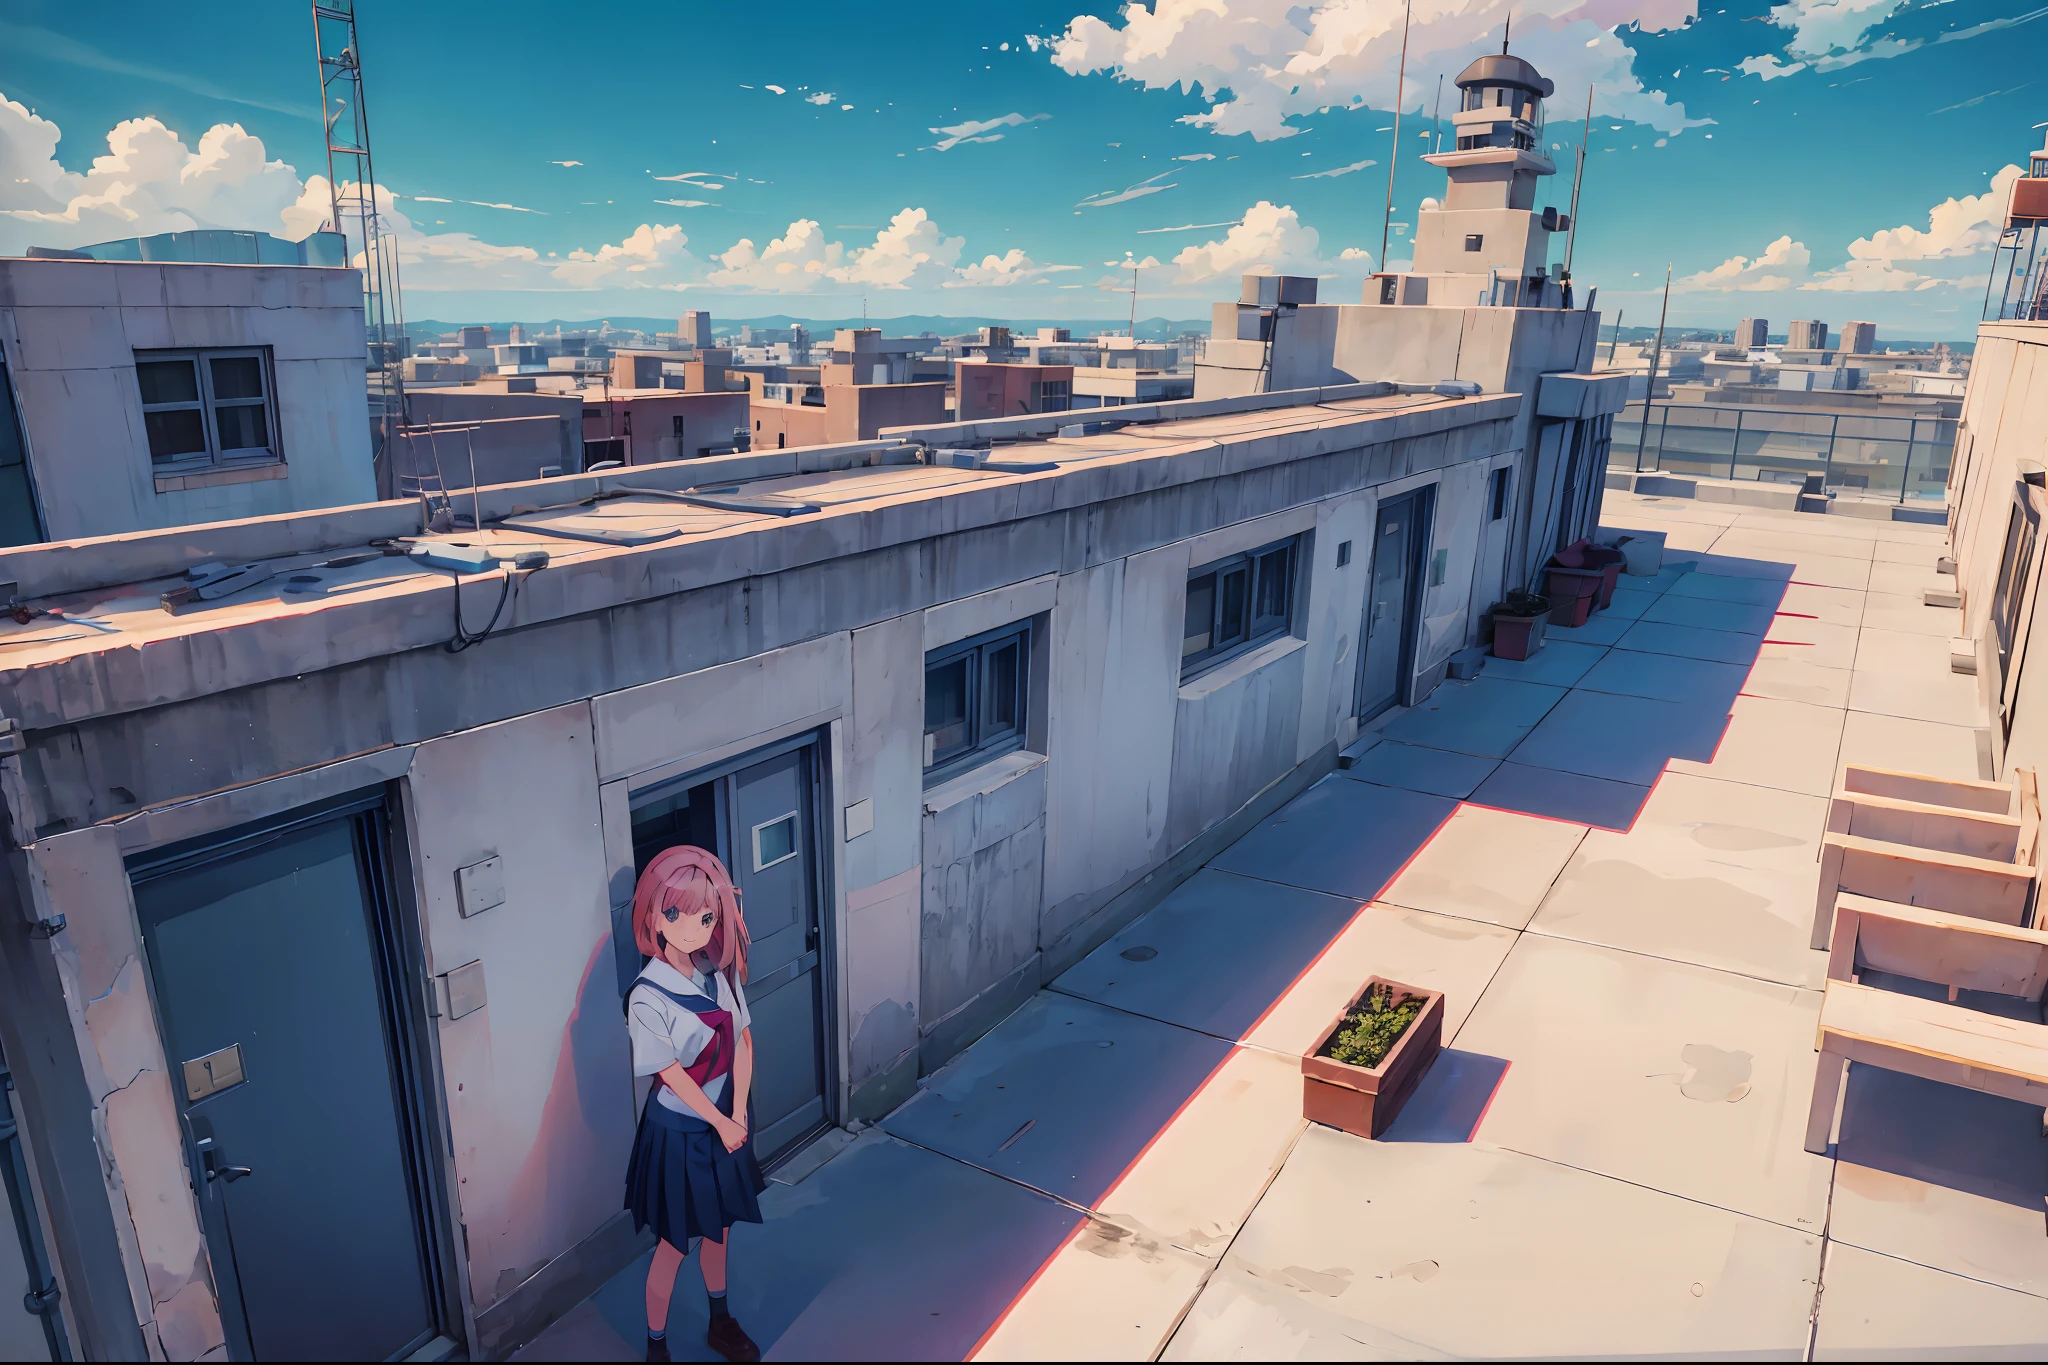 Escola_telhado, Escola telhado, 1 garota, cabelo rosa, sorridente